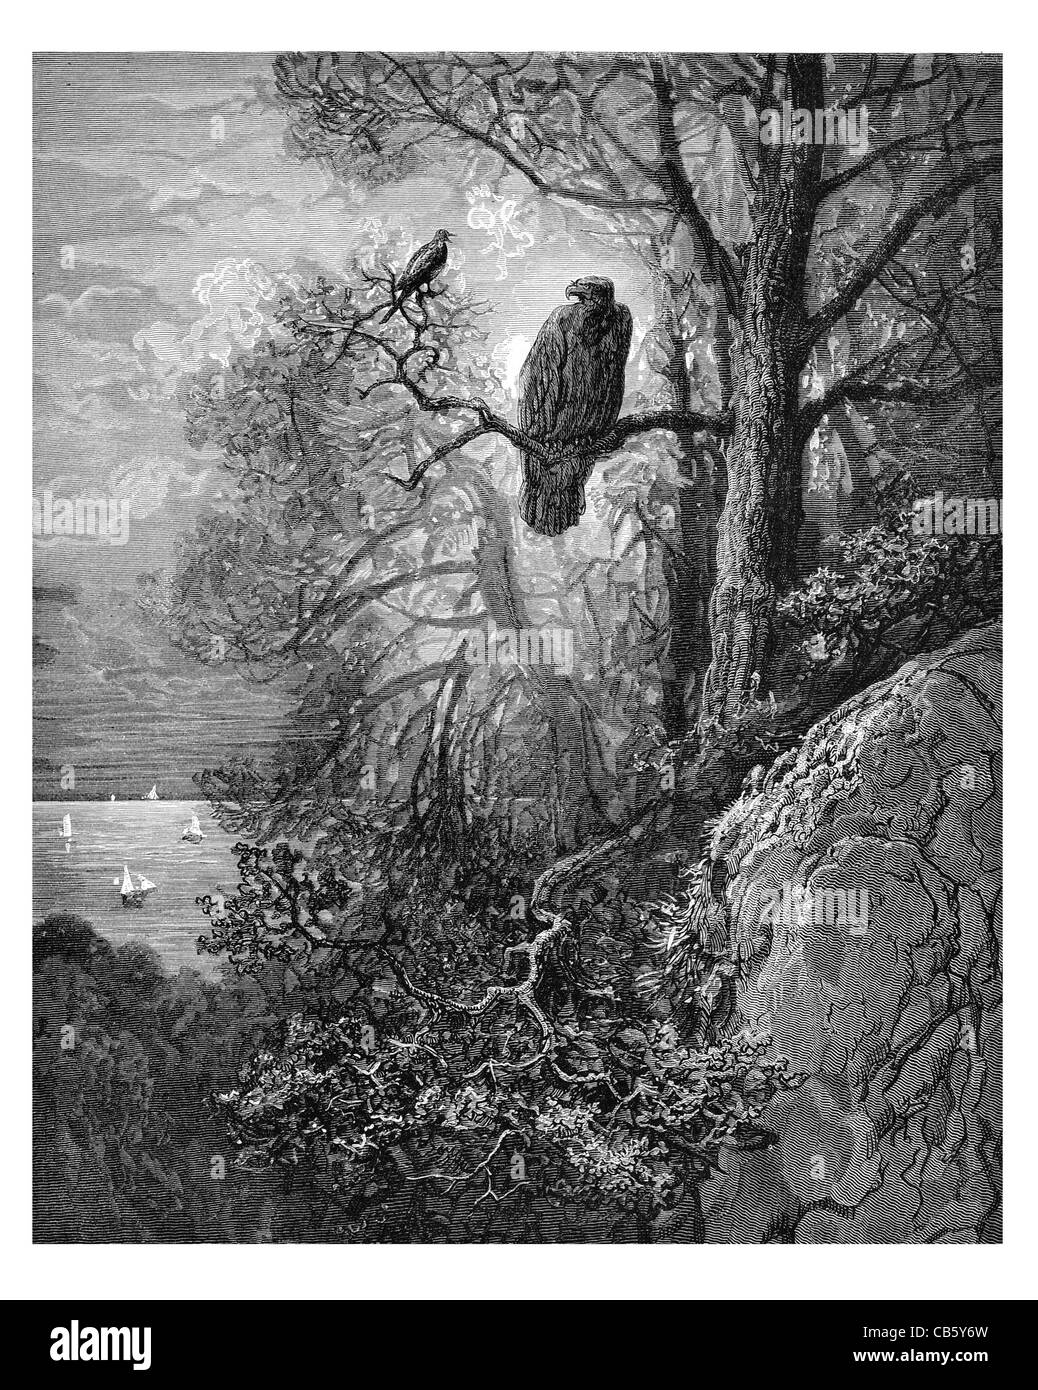 Magpie aigle perché perche arbre branche coast ship ocean wildlife nature sauvage Oiseaux Oiseaux Banque D'Images